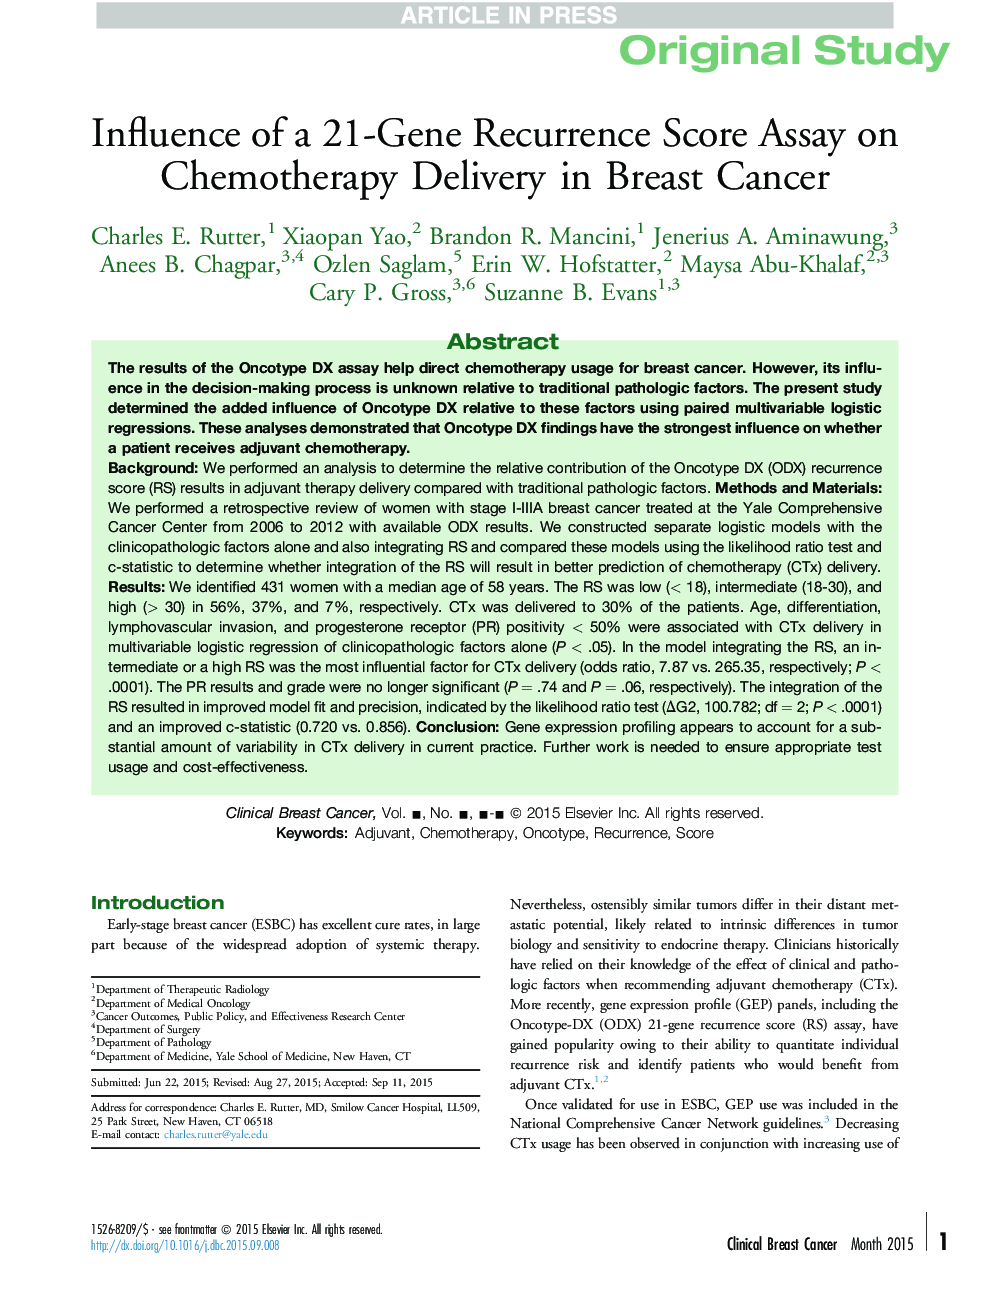 تأثیر یک آزمون ارزیابی مجدد 21 ژن در تحویل شیمی درمانی در سرطان پستان 